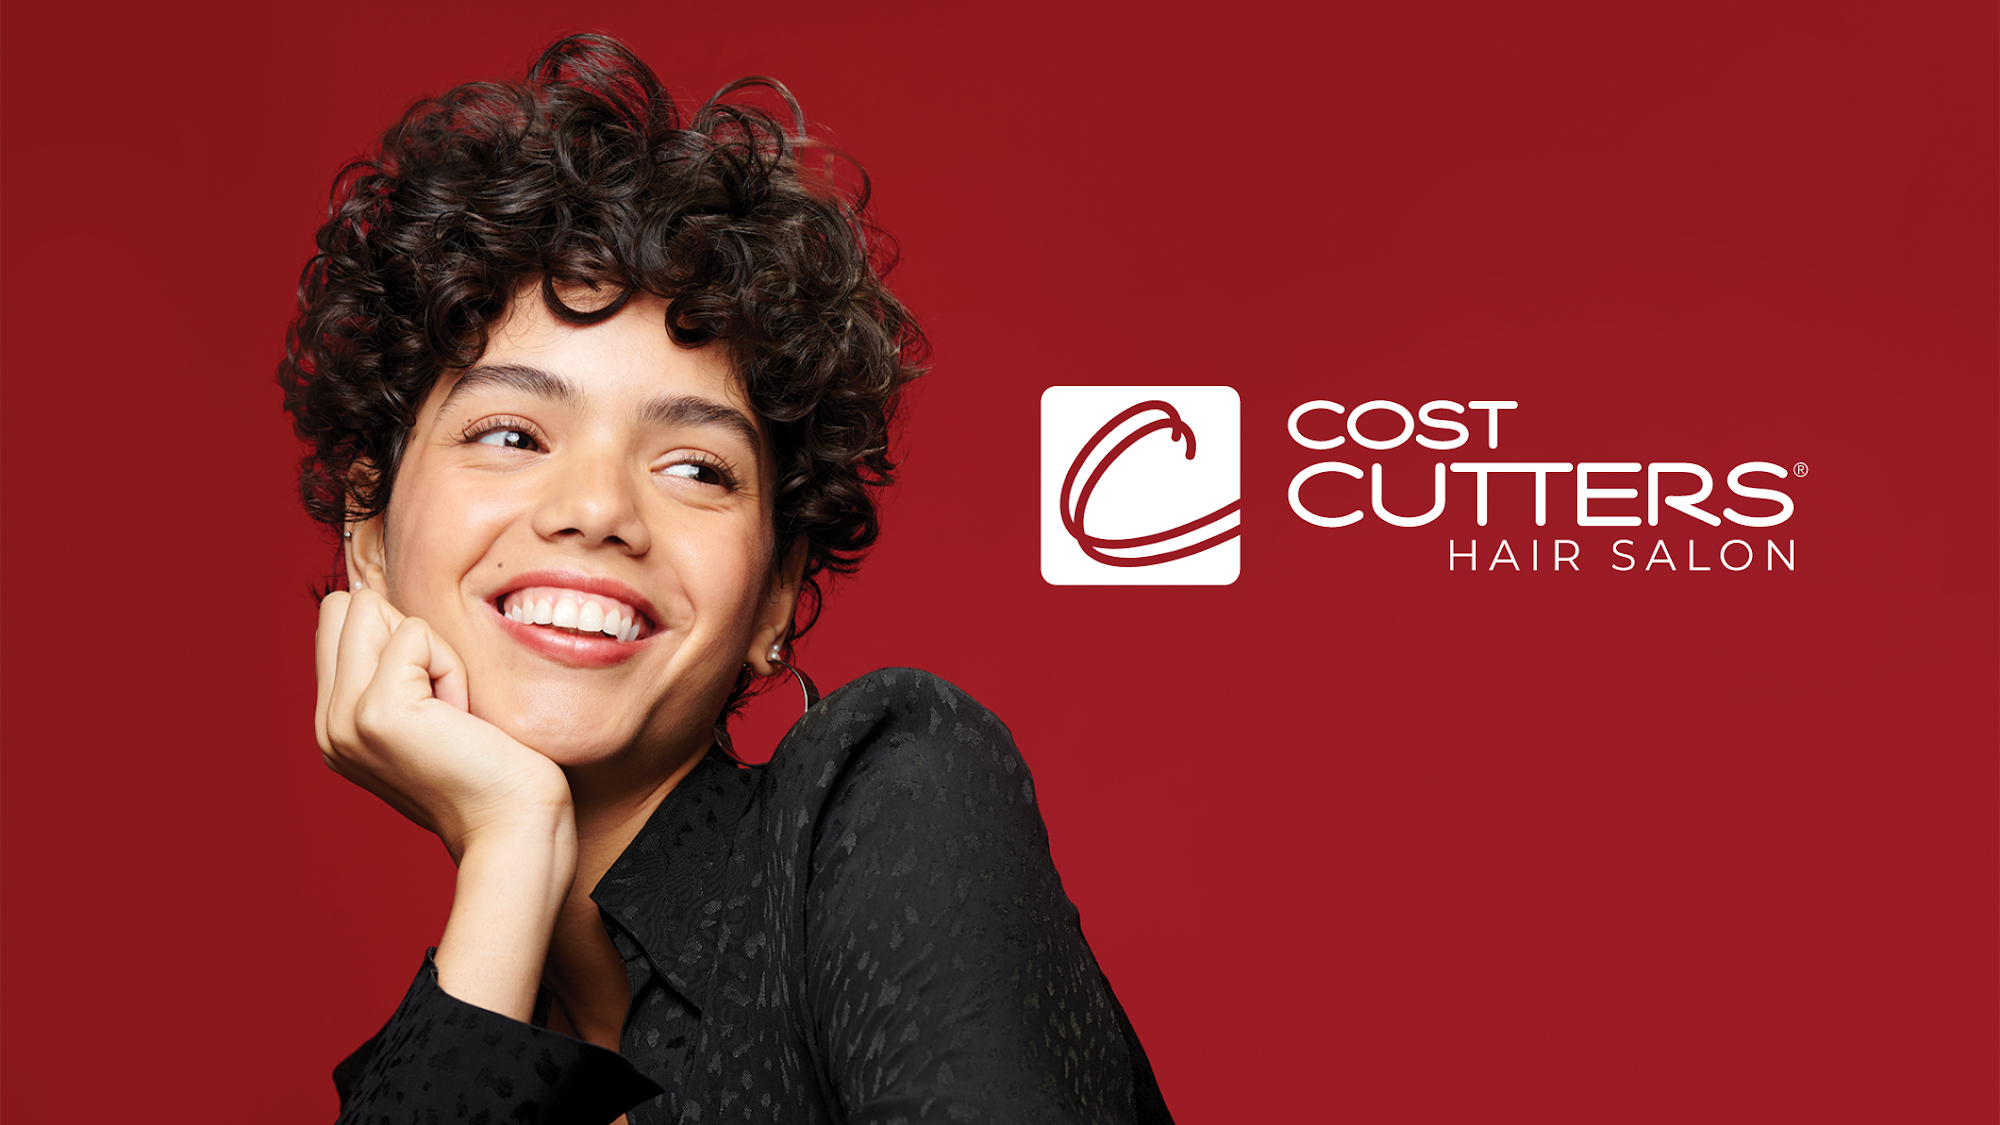 Cost Cutters 6 Milliston Rd, Millis Massachusetts 02054